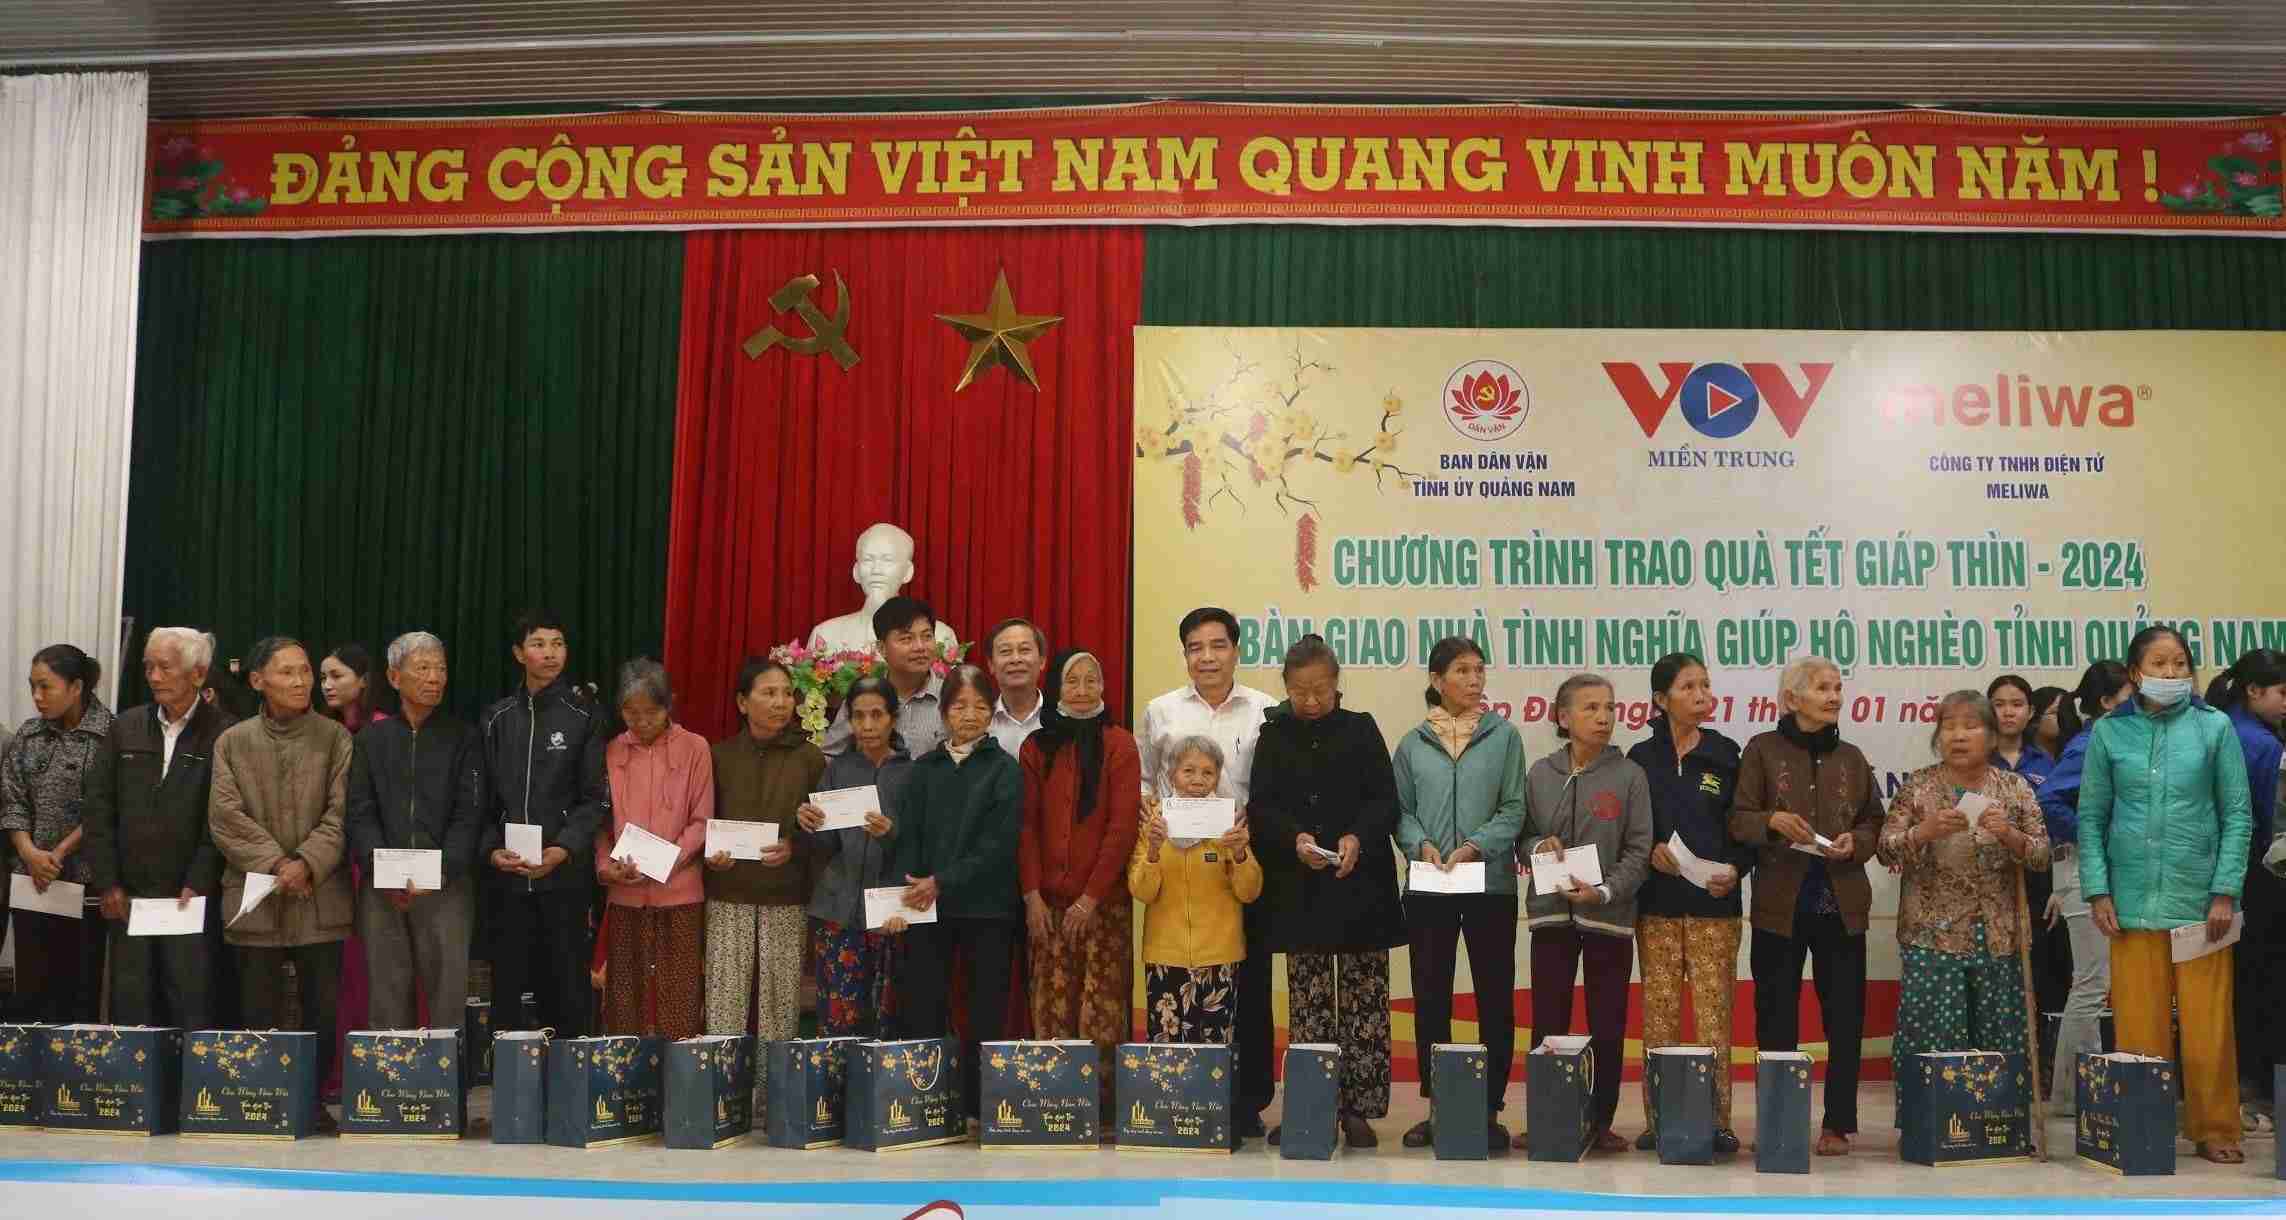 Tập đoàn BIN Corporation, Công ty TNHH Điện tử Meliwa tổ chức nhiều chương trình thiện nguyện giúp đỡ người nghèo tại Quảng Nam. Ảnh: Trà Ban